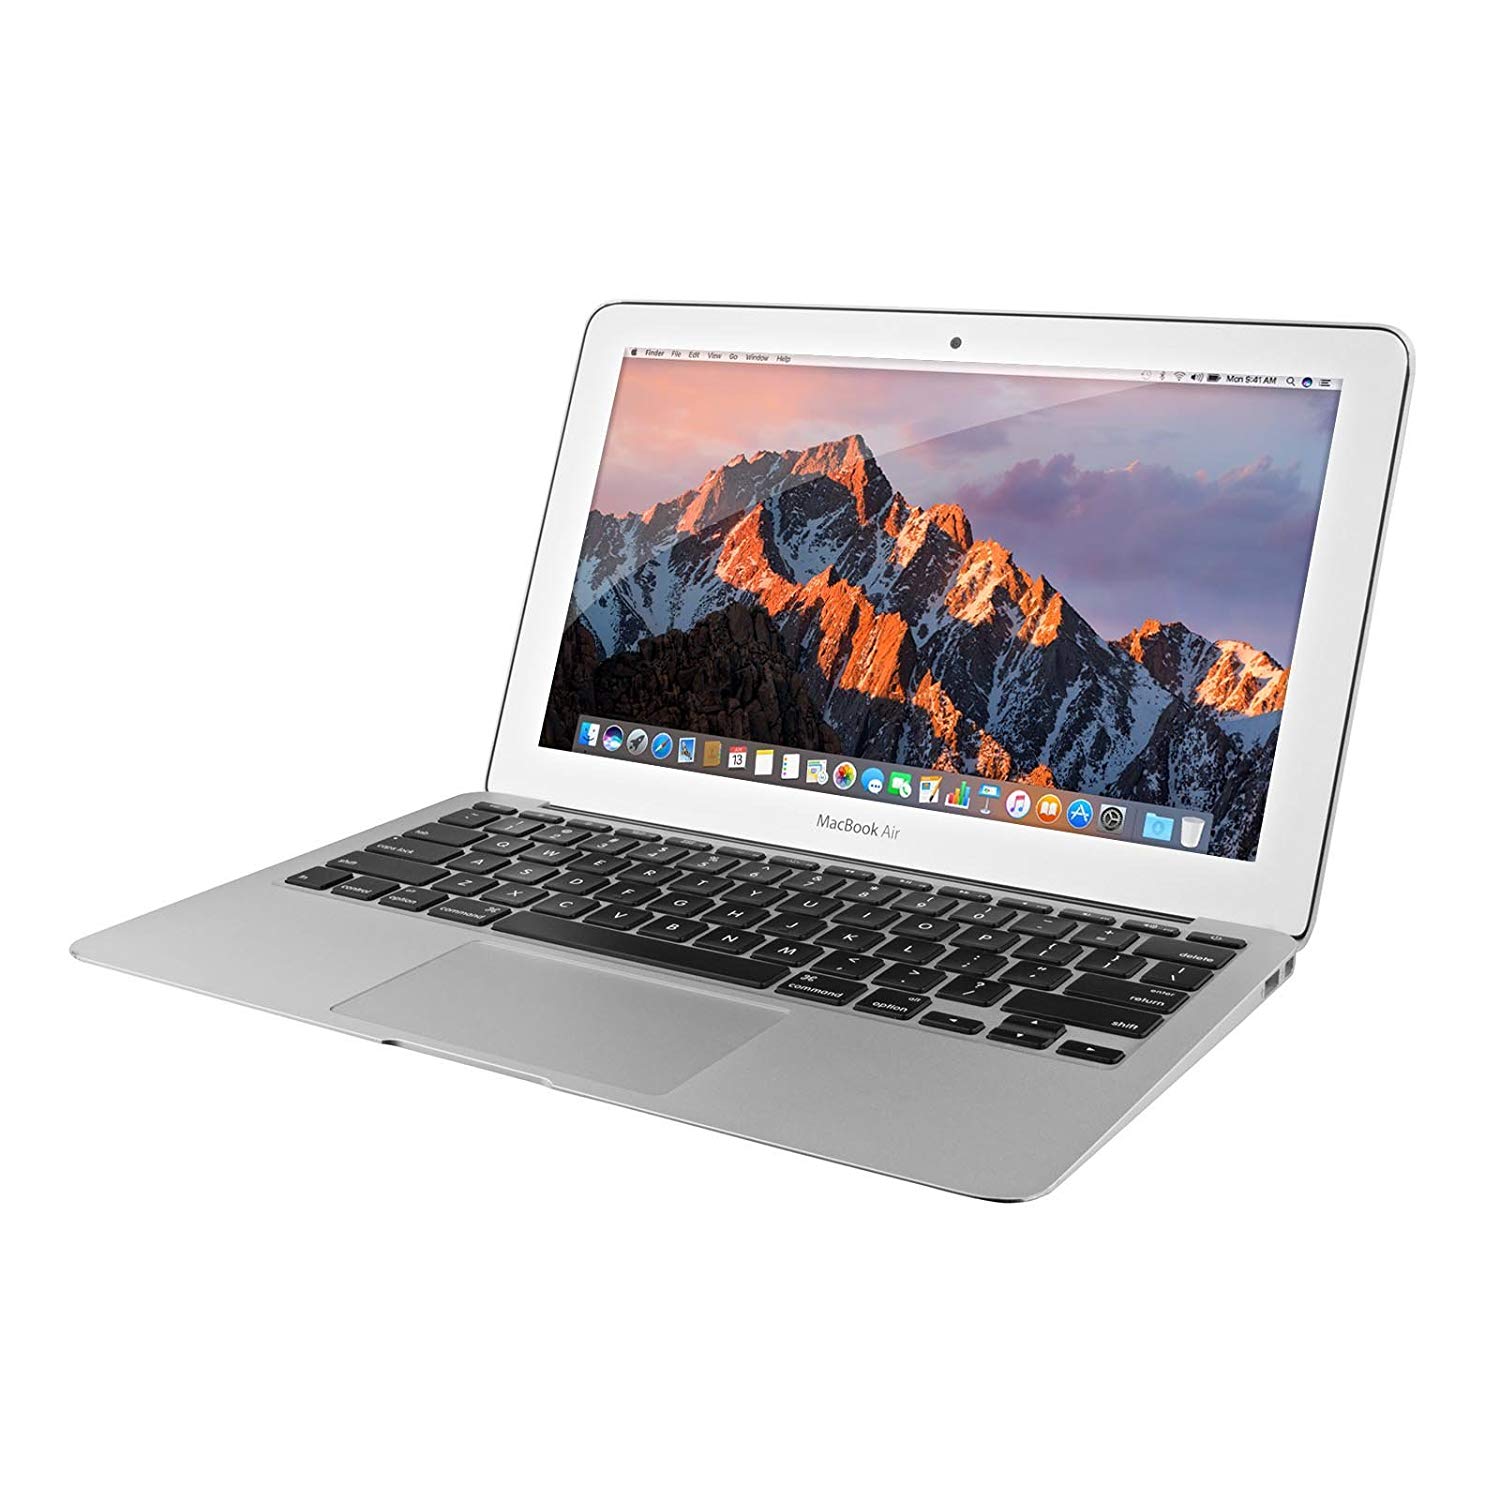 Amazon.com: Apple MacBook Air MJVM2LL/A Intel i5 1.6GHz 4GB 128GB ...